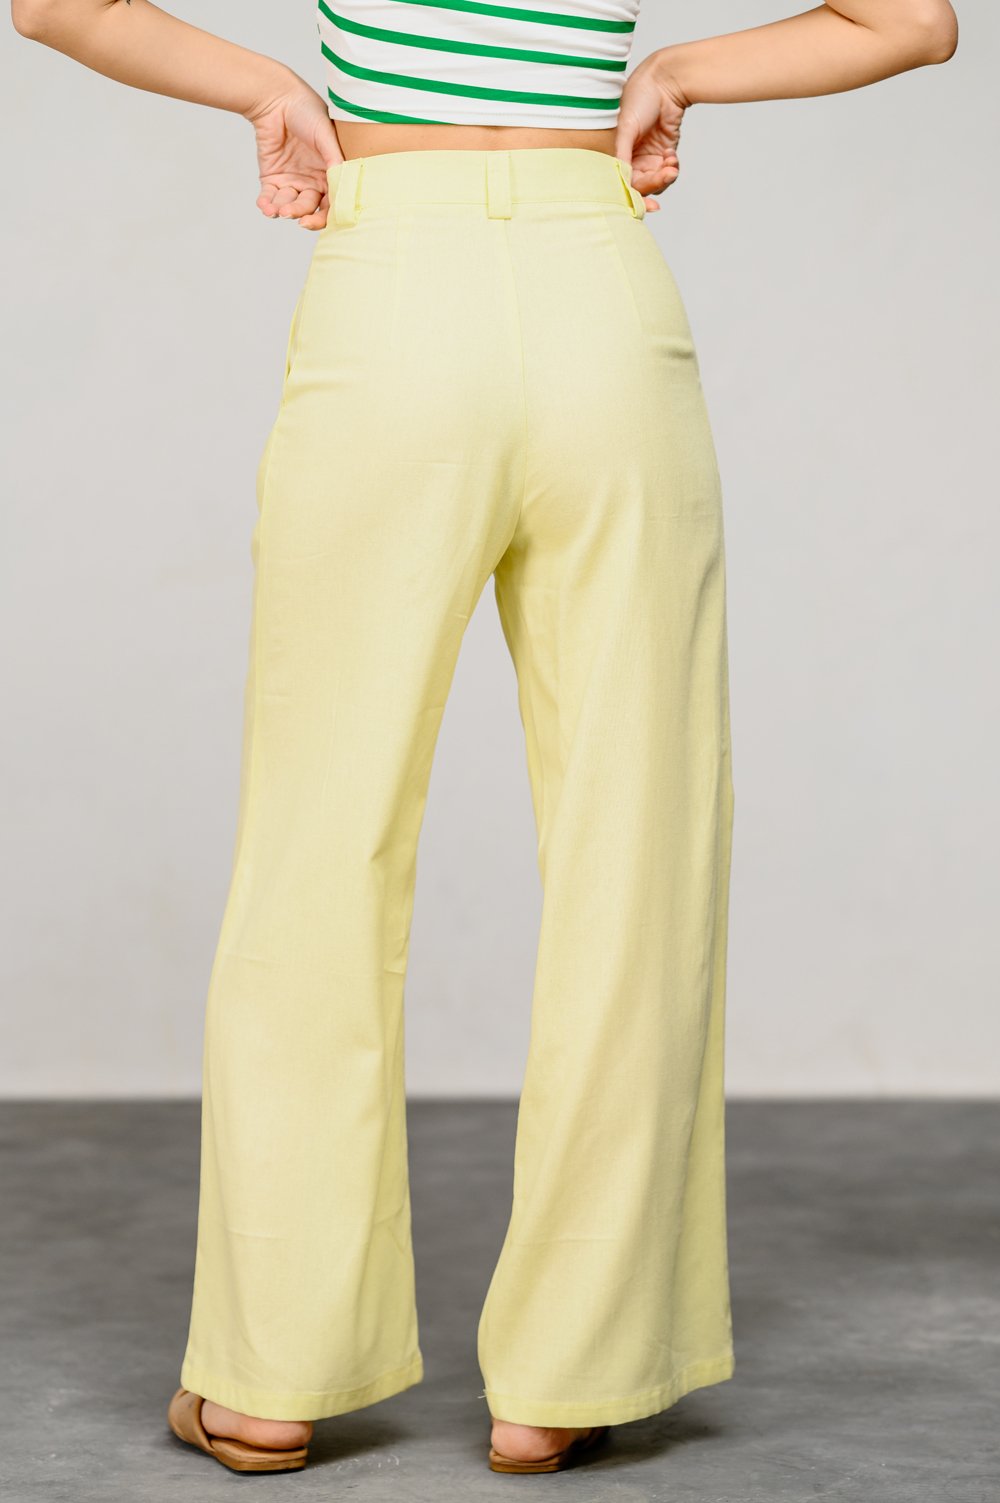 Лляні штани лимонного кольору